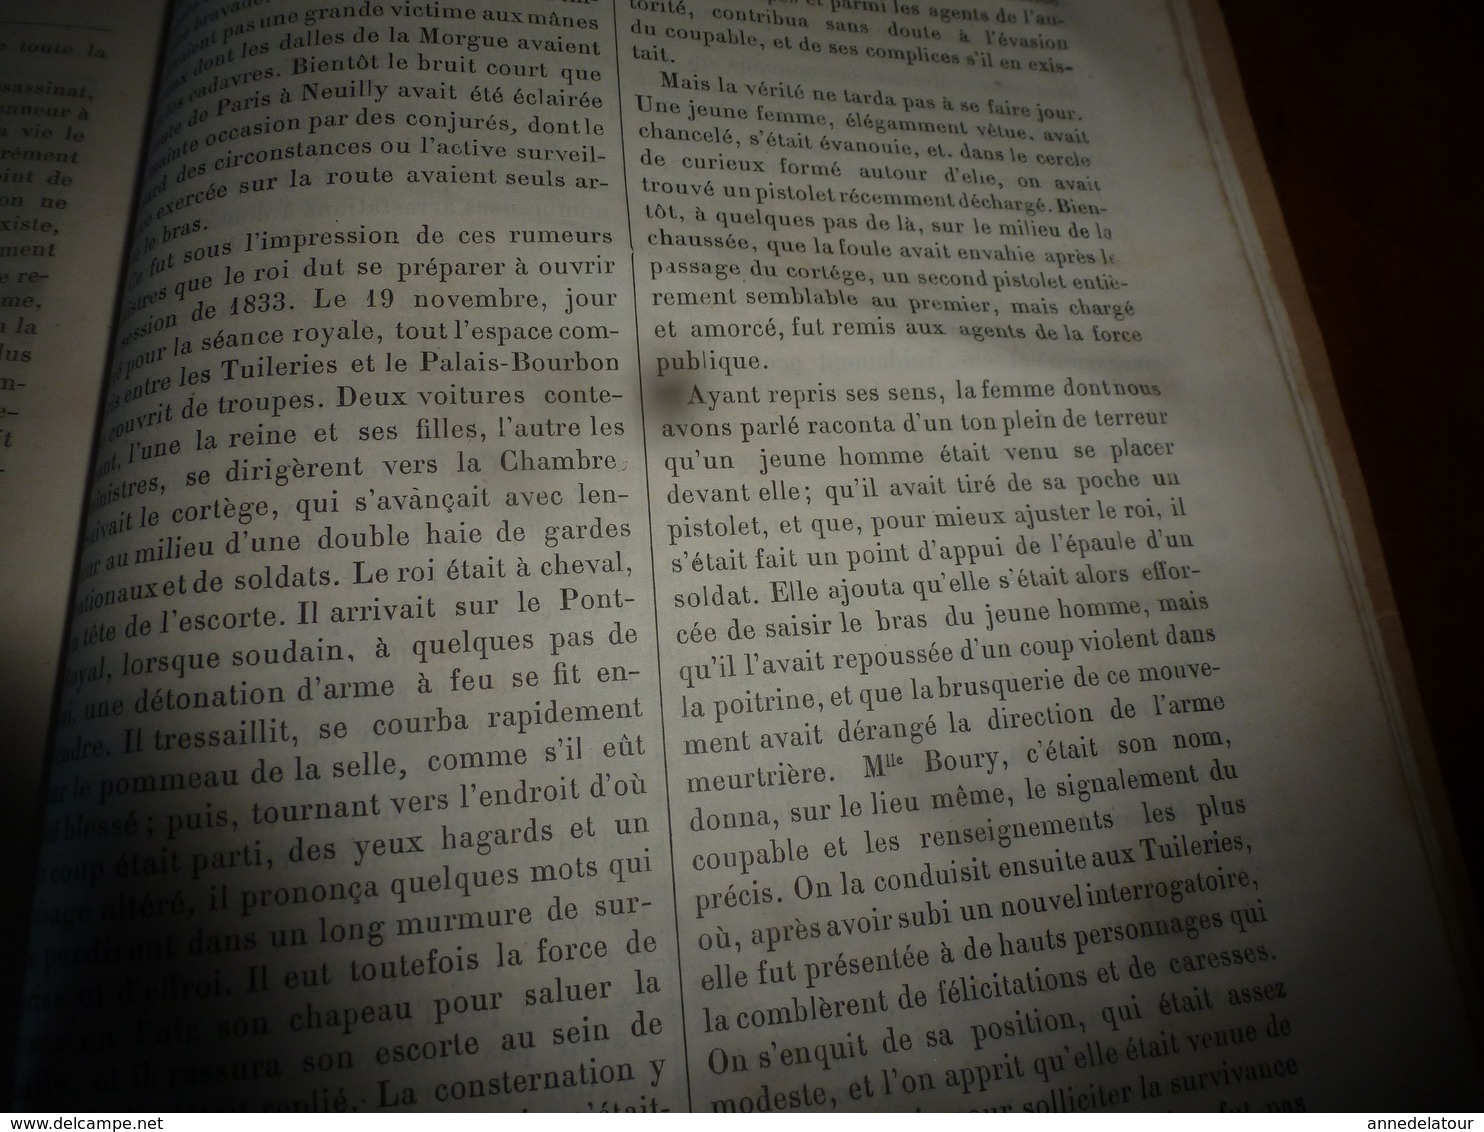 1882 Révolution française ------> HISTOIRE de 10 ANS (1830-1840)  tome 1